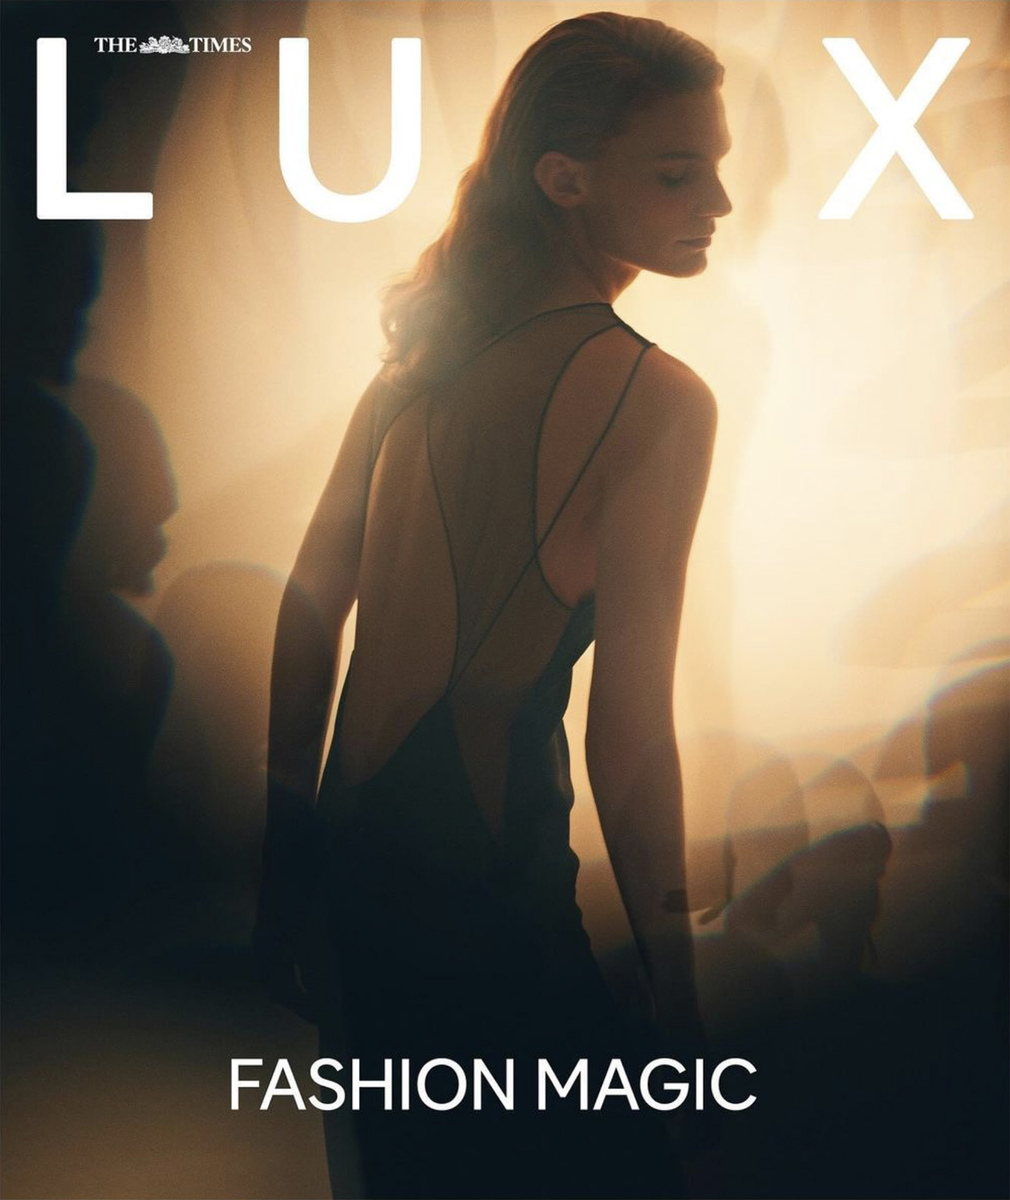 LUNDLUND : The Times Magazine Luxx